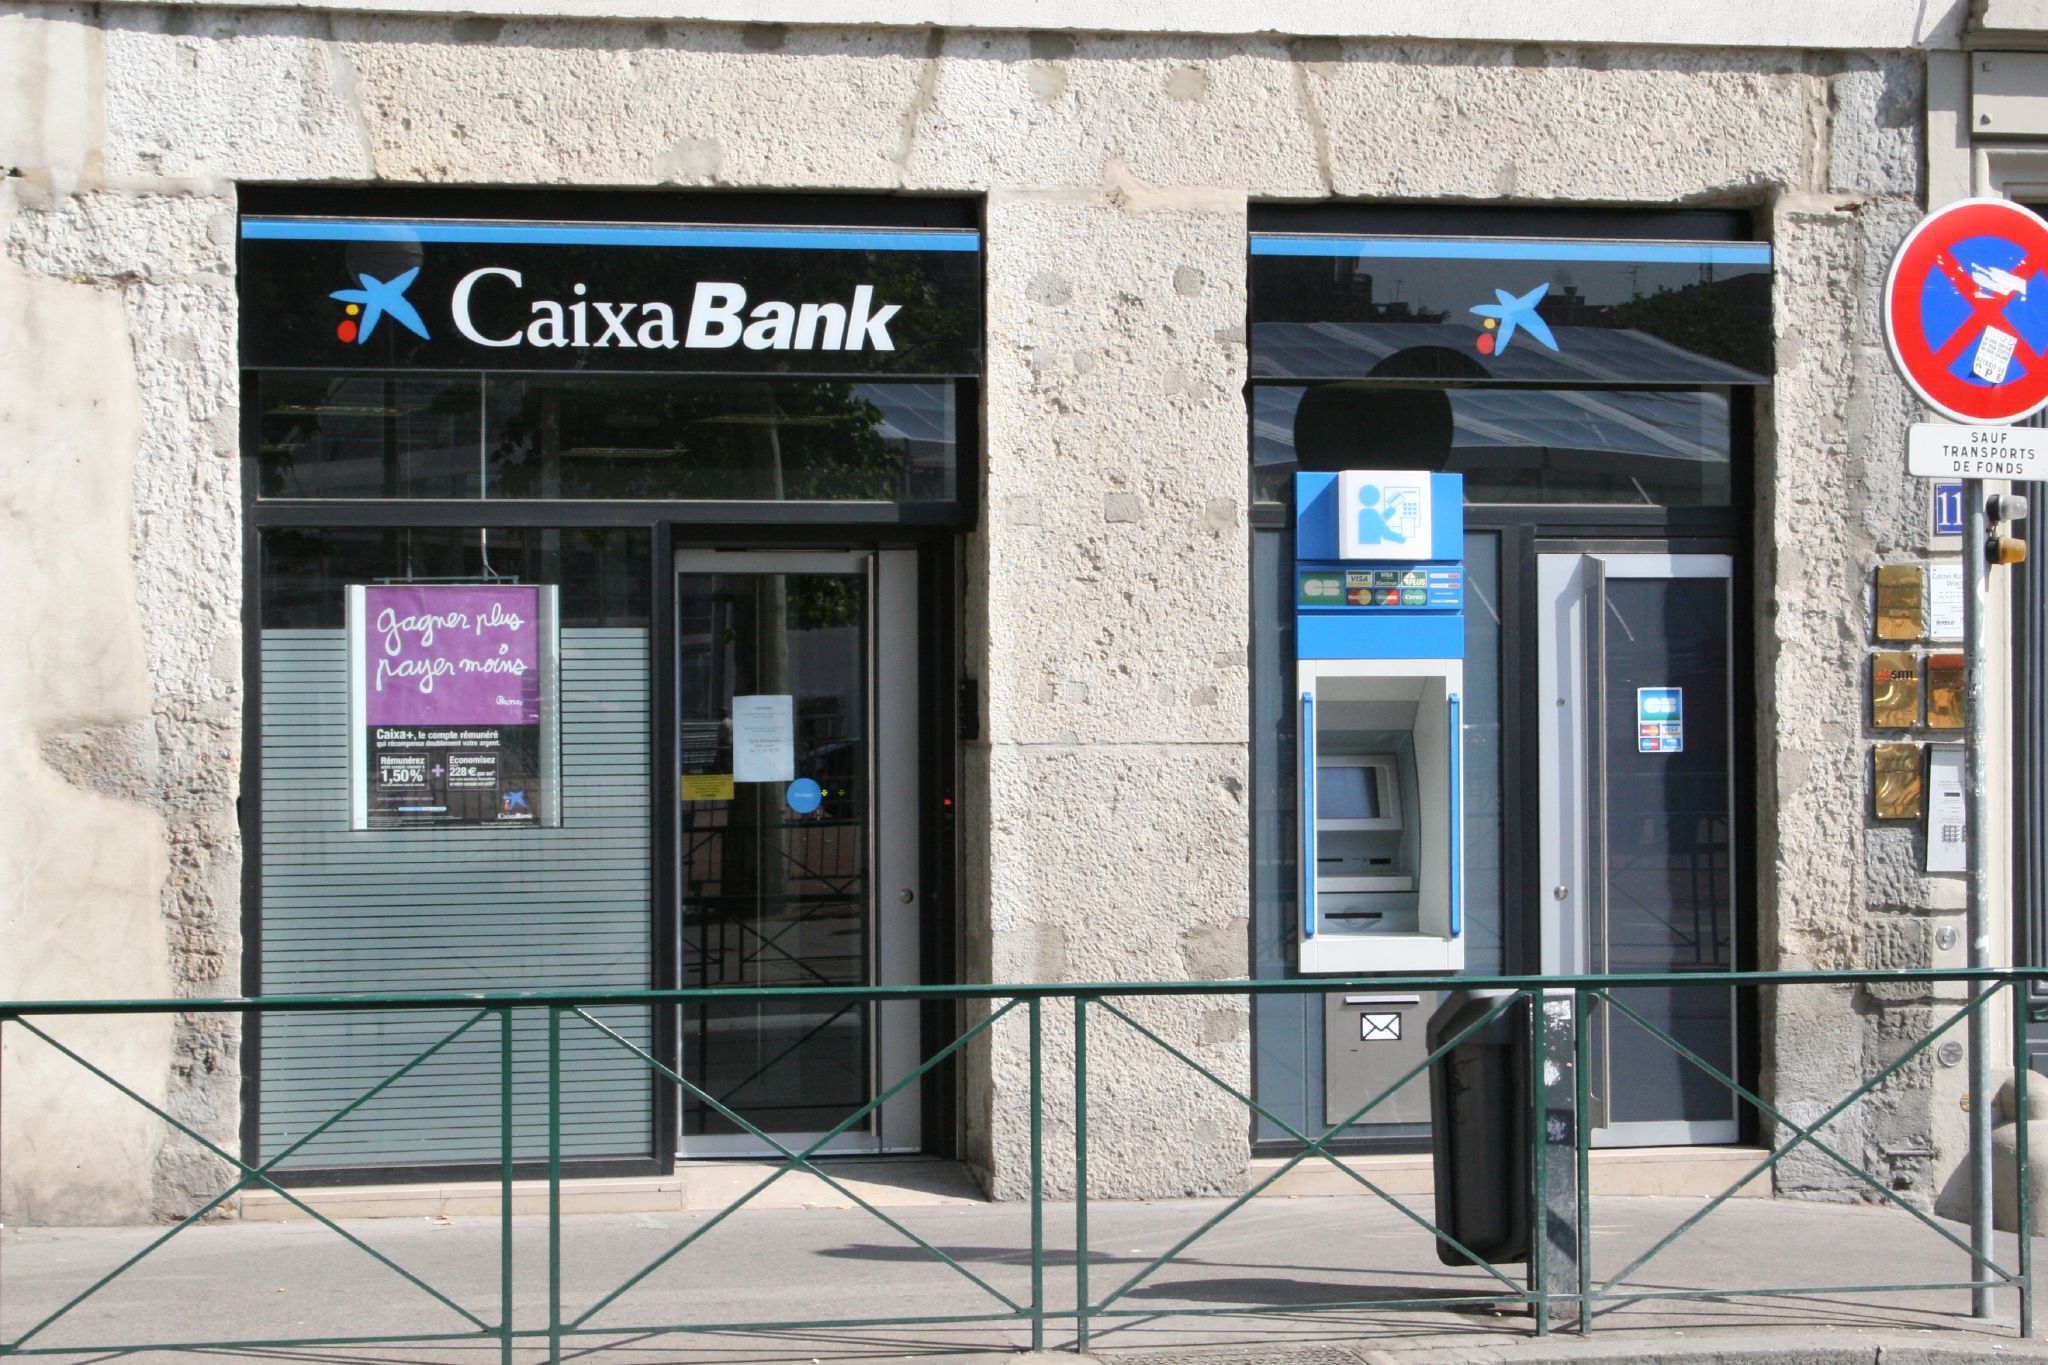 Fusión de CaixaBank y Bankia: CaixaBank plantea el despido de